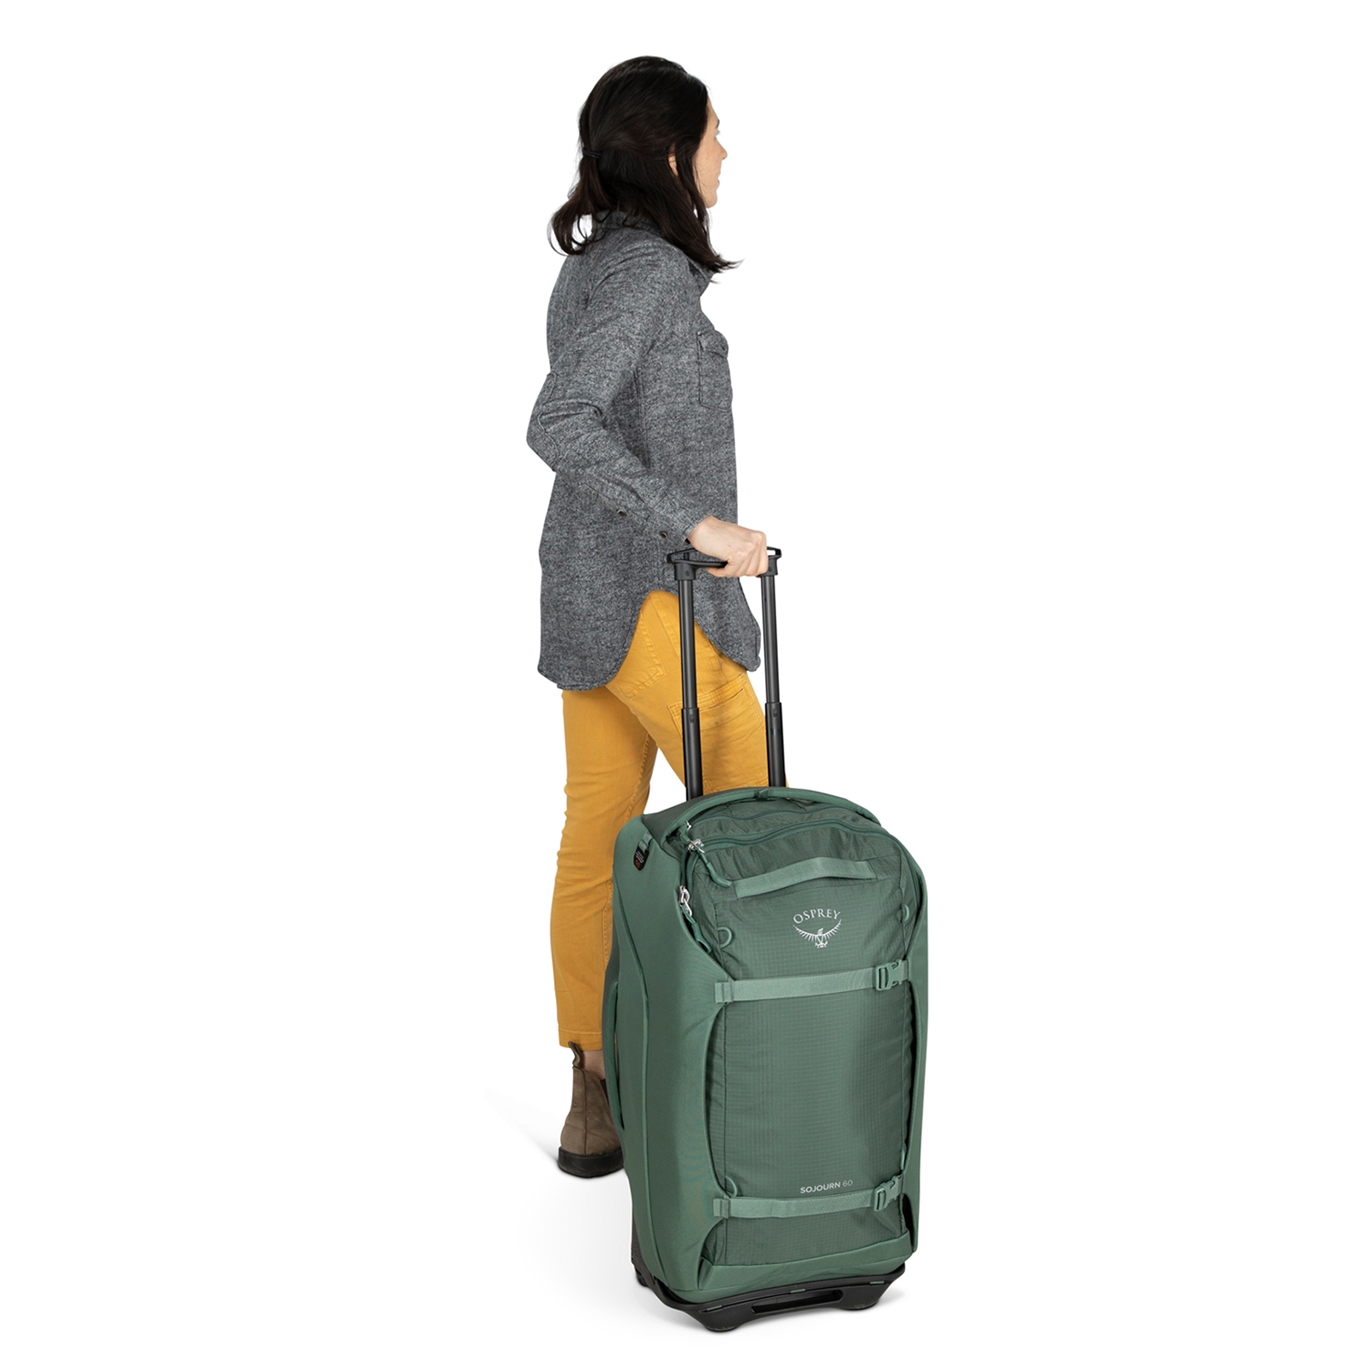 Beweren inflatie ik heb nodig Osprey backpack? Shop nú de nieuwste Osprey collectie online! |  Travelbags.nl